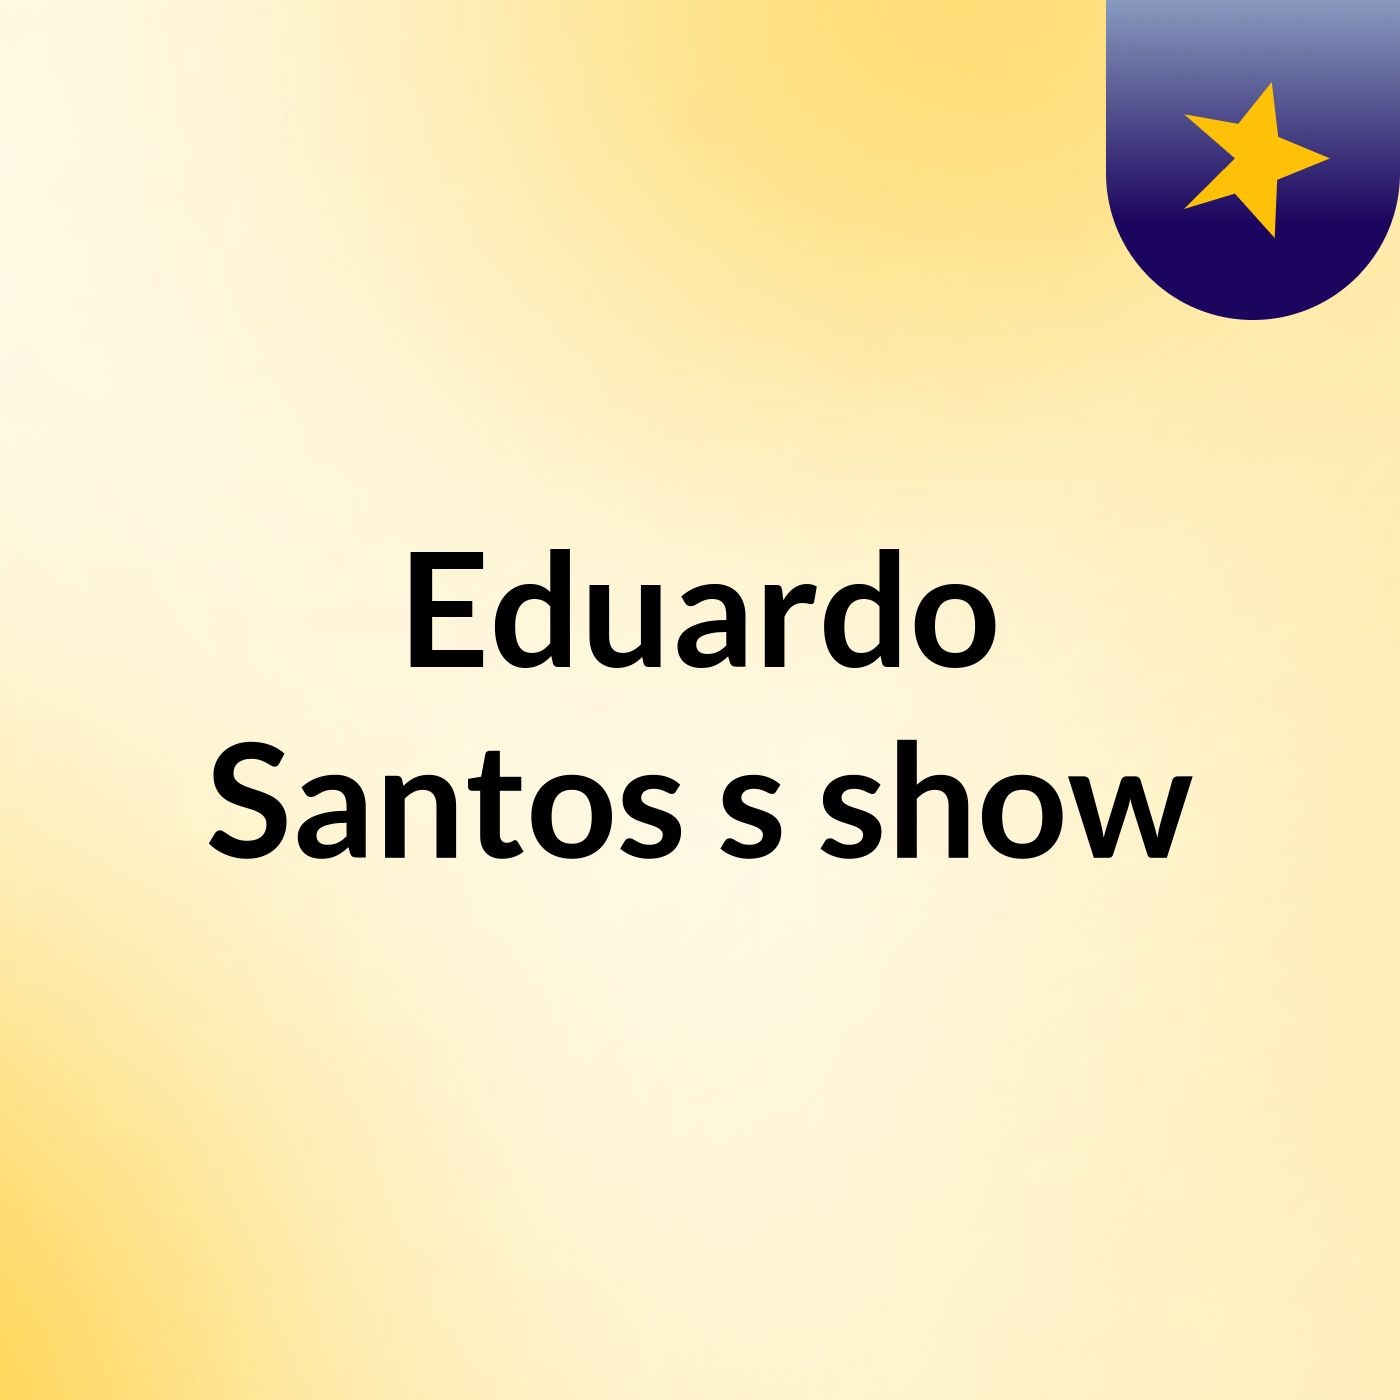 Episódio 31 - Eduardo Santos's show